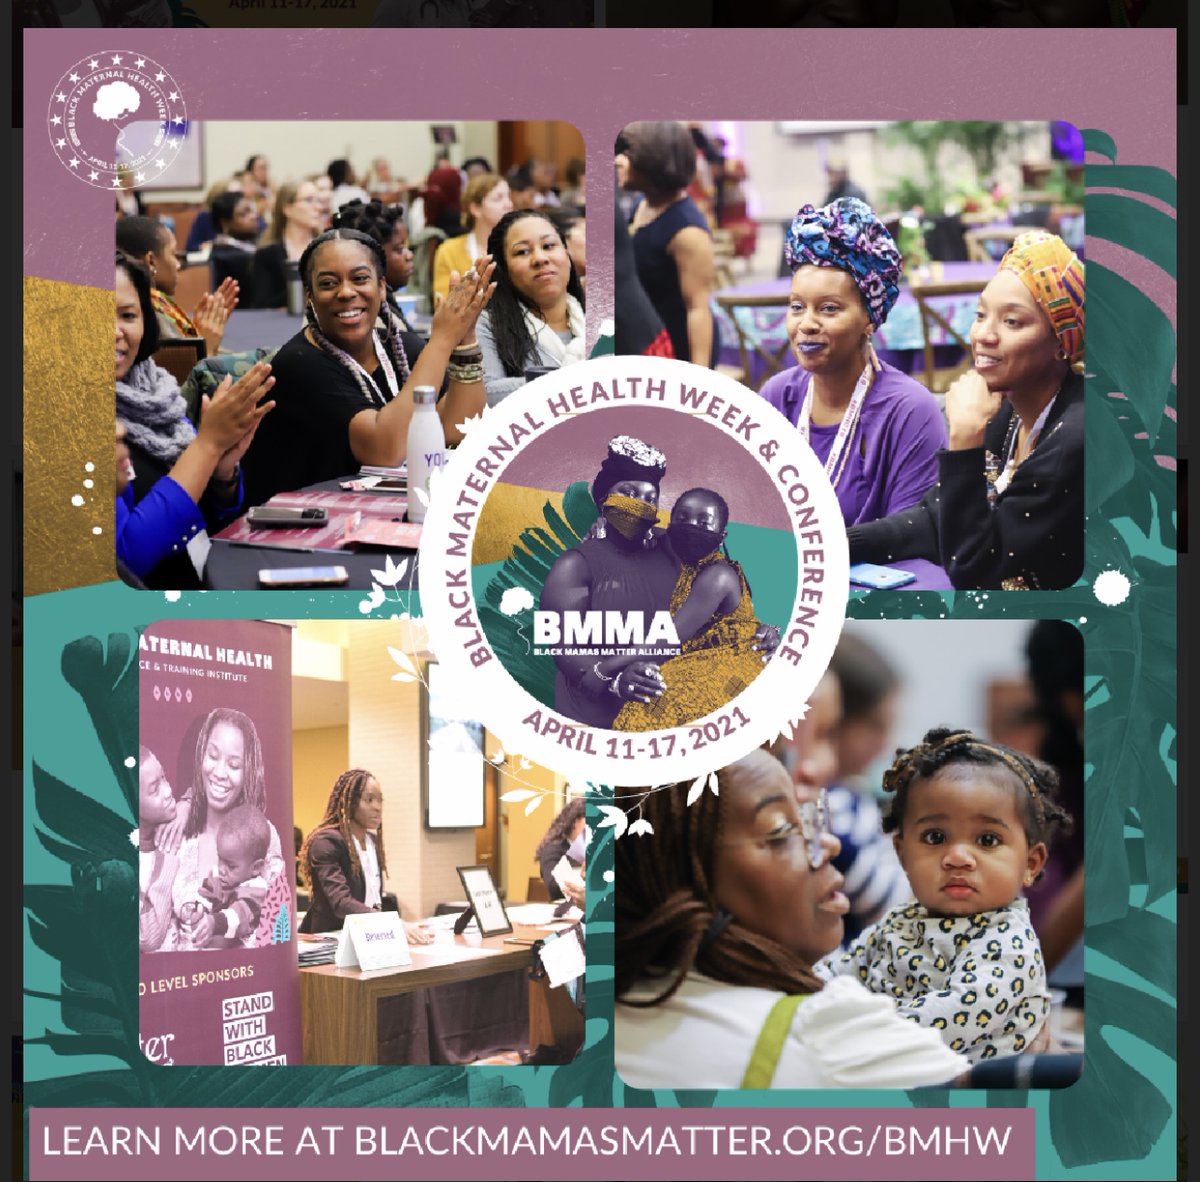 #BMHW21 #BlackMamasMatter #BlackMaternalHealthWeek
#BirthJustice #MaternalEquity #BlackMaternalHealth